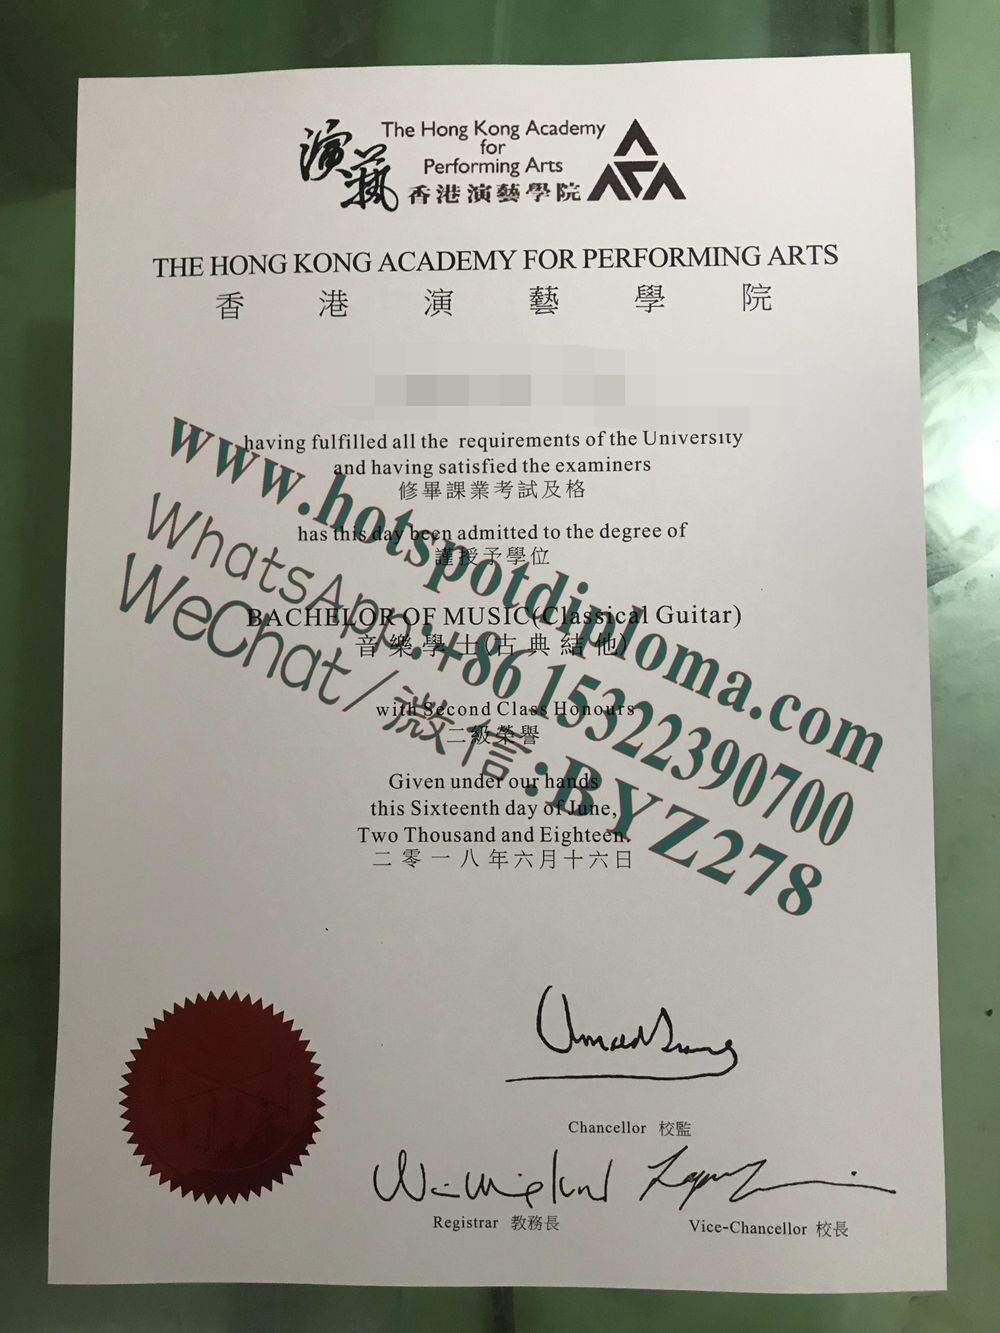 Buy Hong Kong Academy for Performing Arts Diploma online